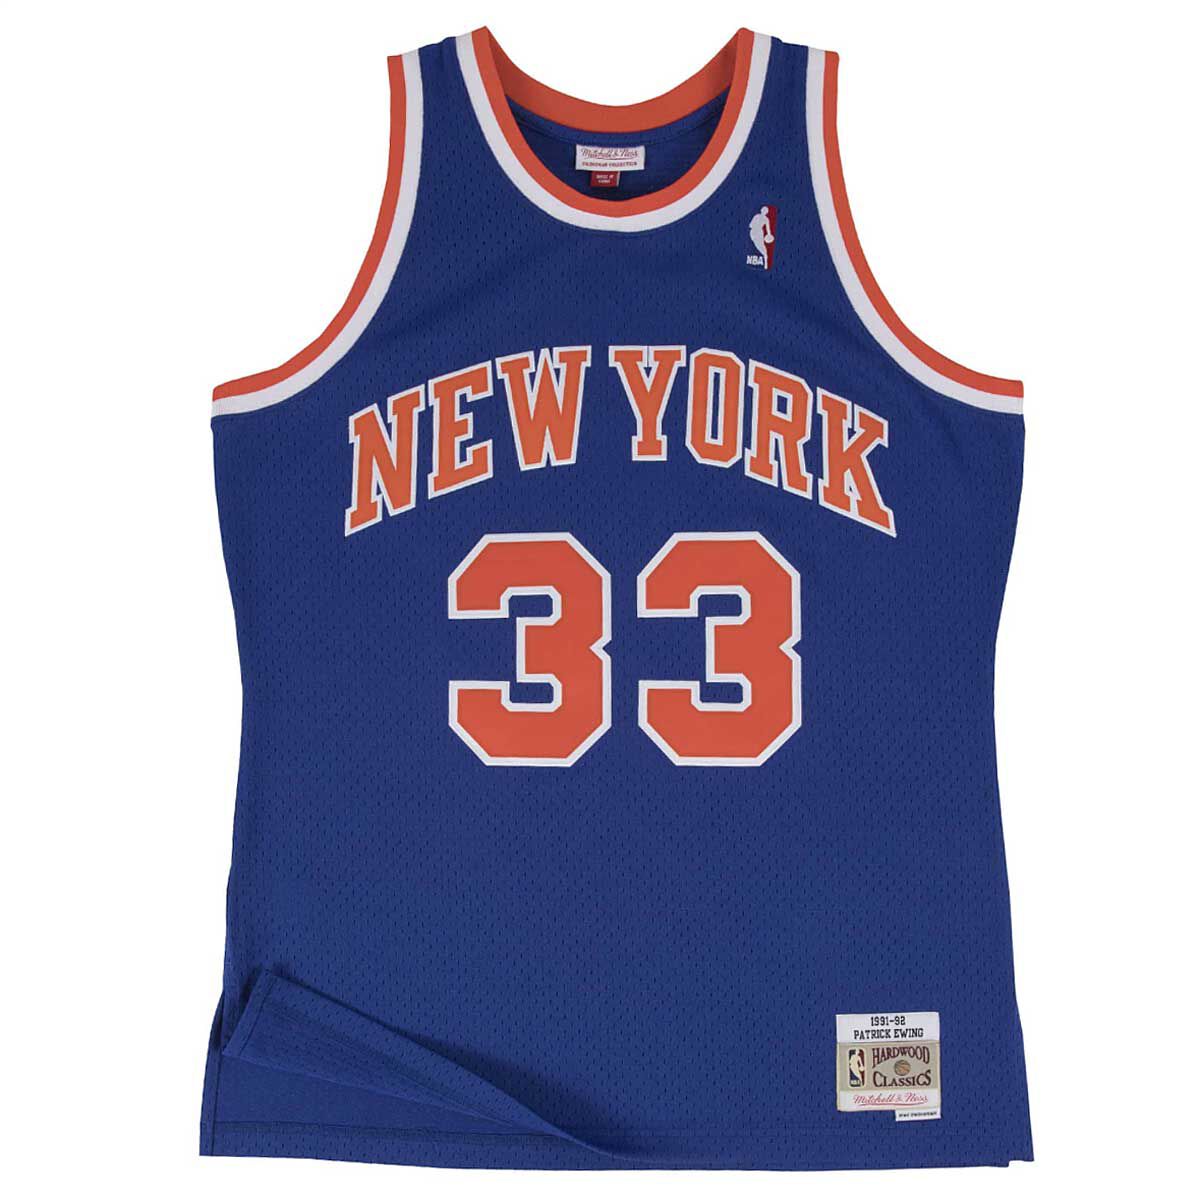 Image of Mitchell And Ness NBA New York Knicks Swingman Jersey 1991-92 Patrick Ewing, Royal Blue